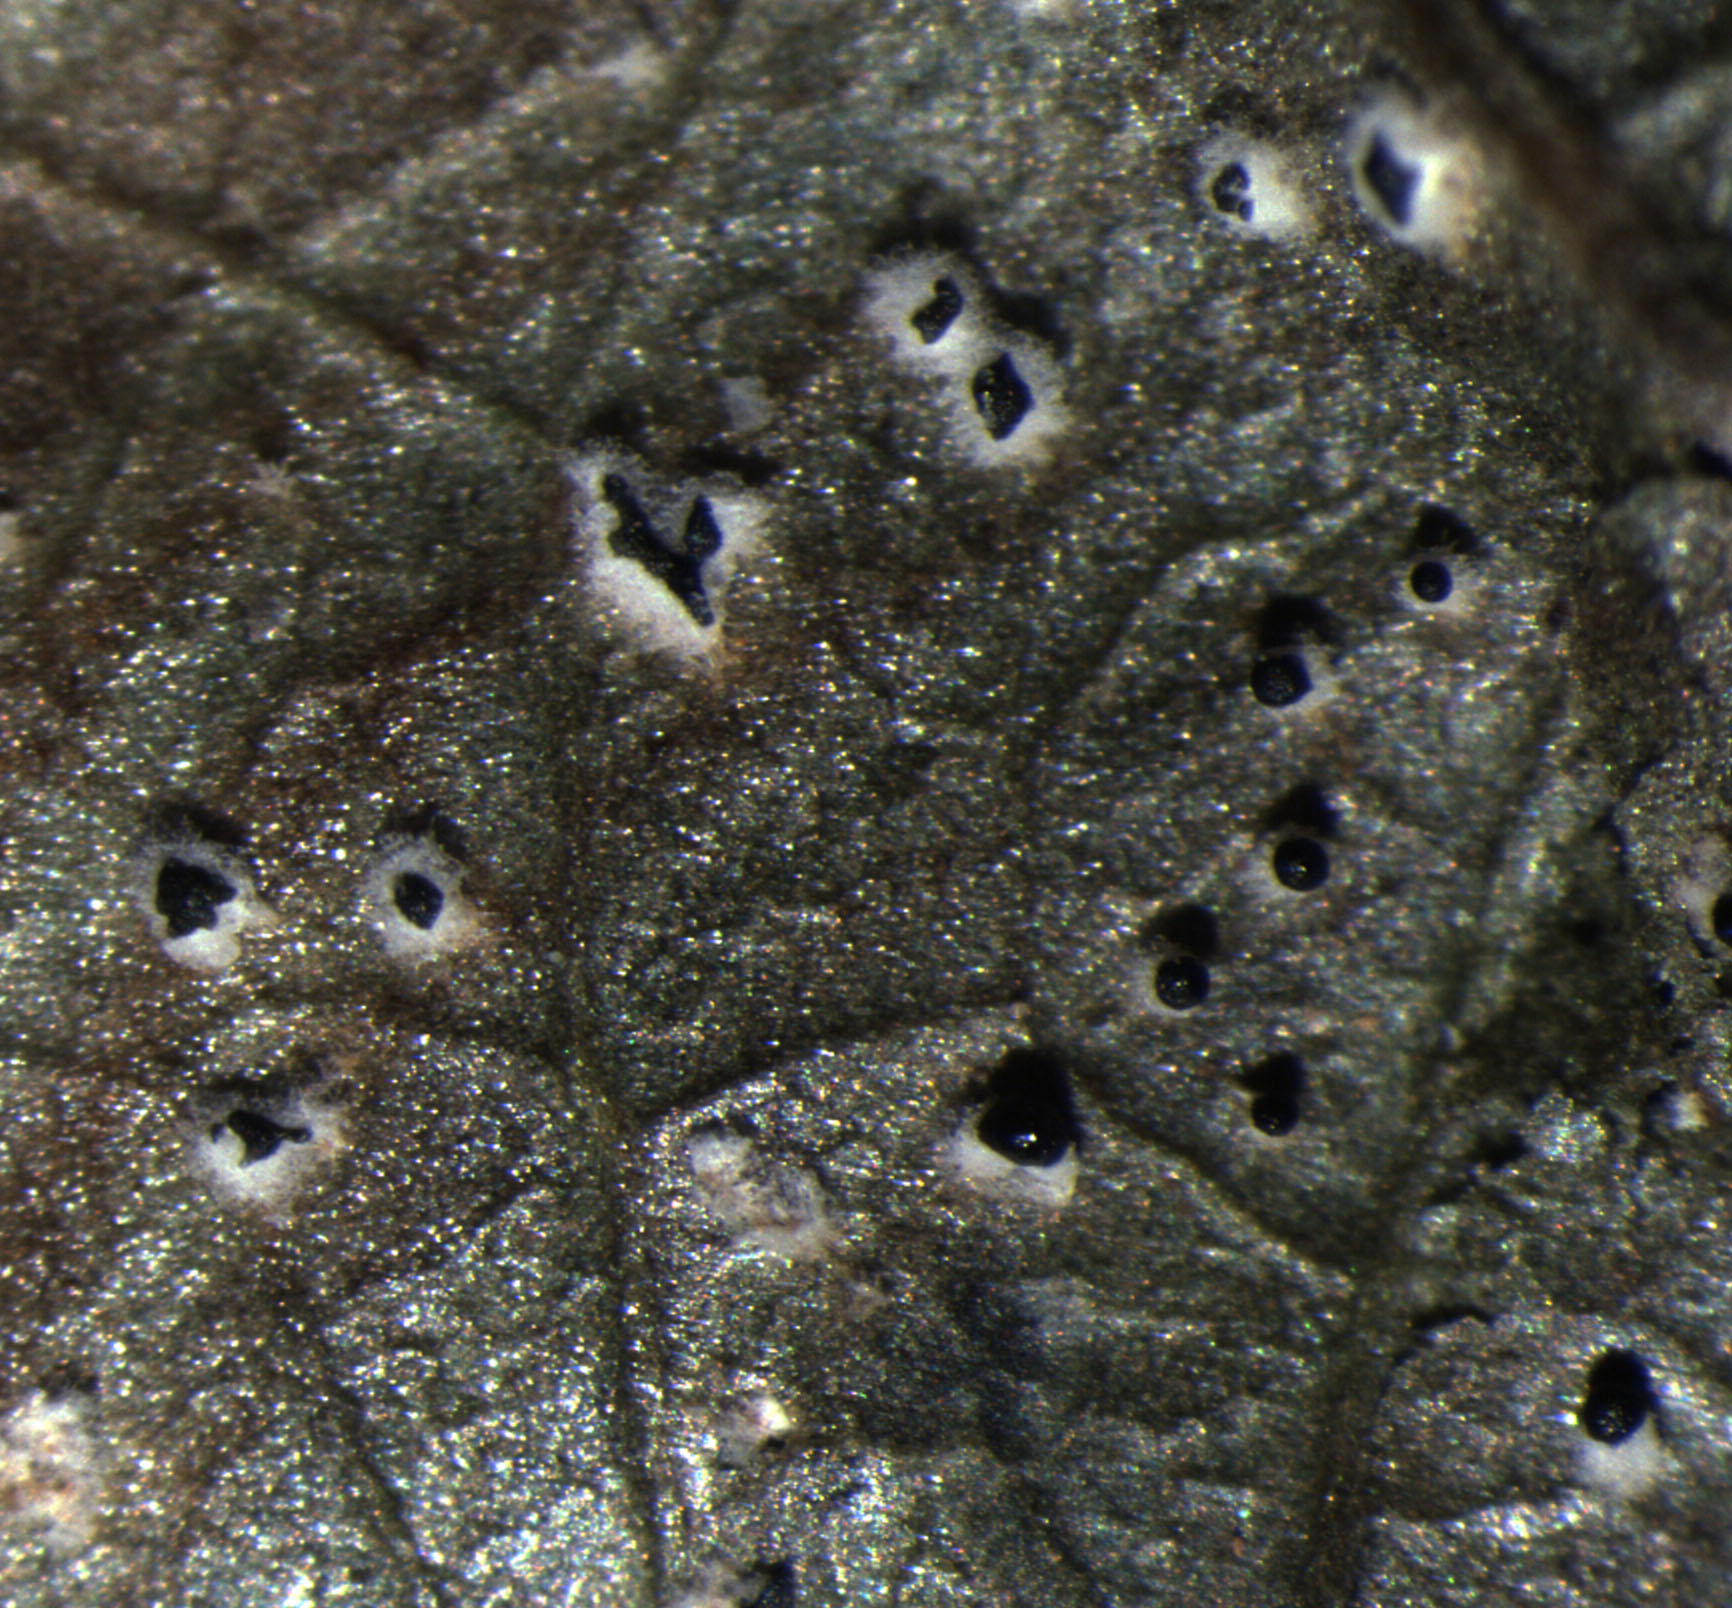 Figura 3 - Os esporodóquios formados sob os tecidos da folha são circundados por um micélio branco e encobertos por uma massa negra de esporos.